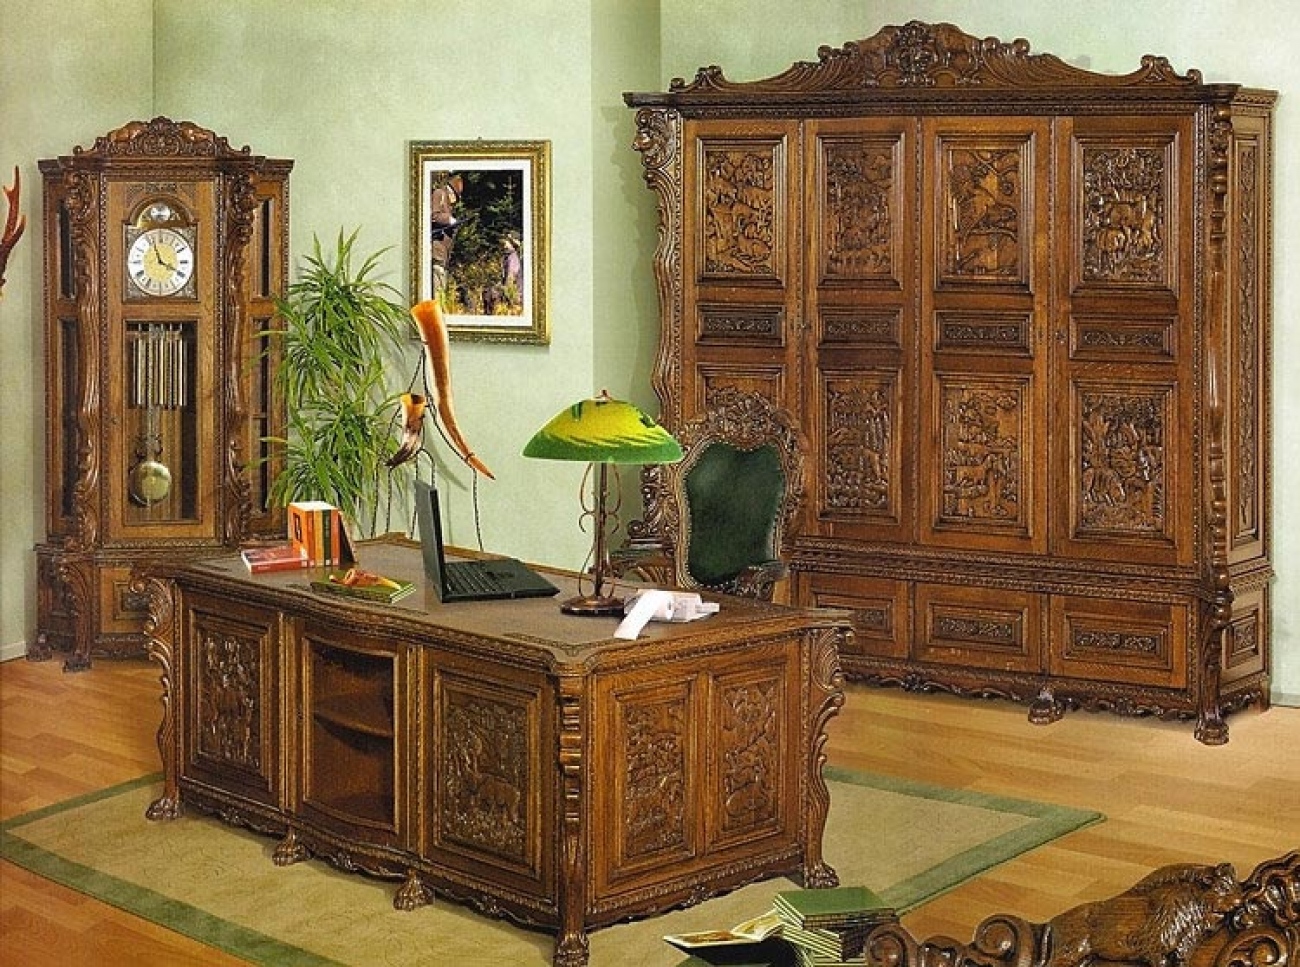 Румынская мебель кабинет Hanter